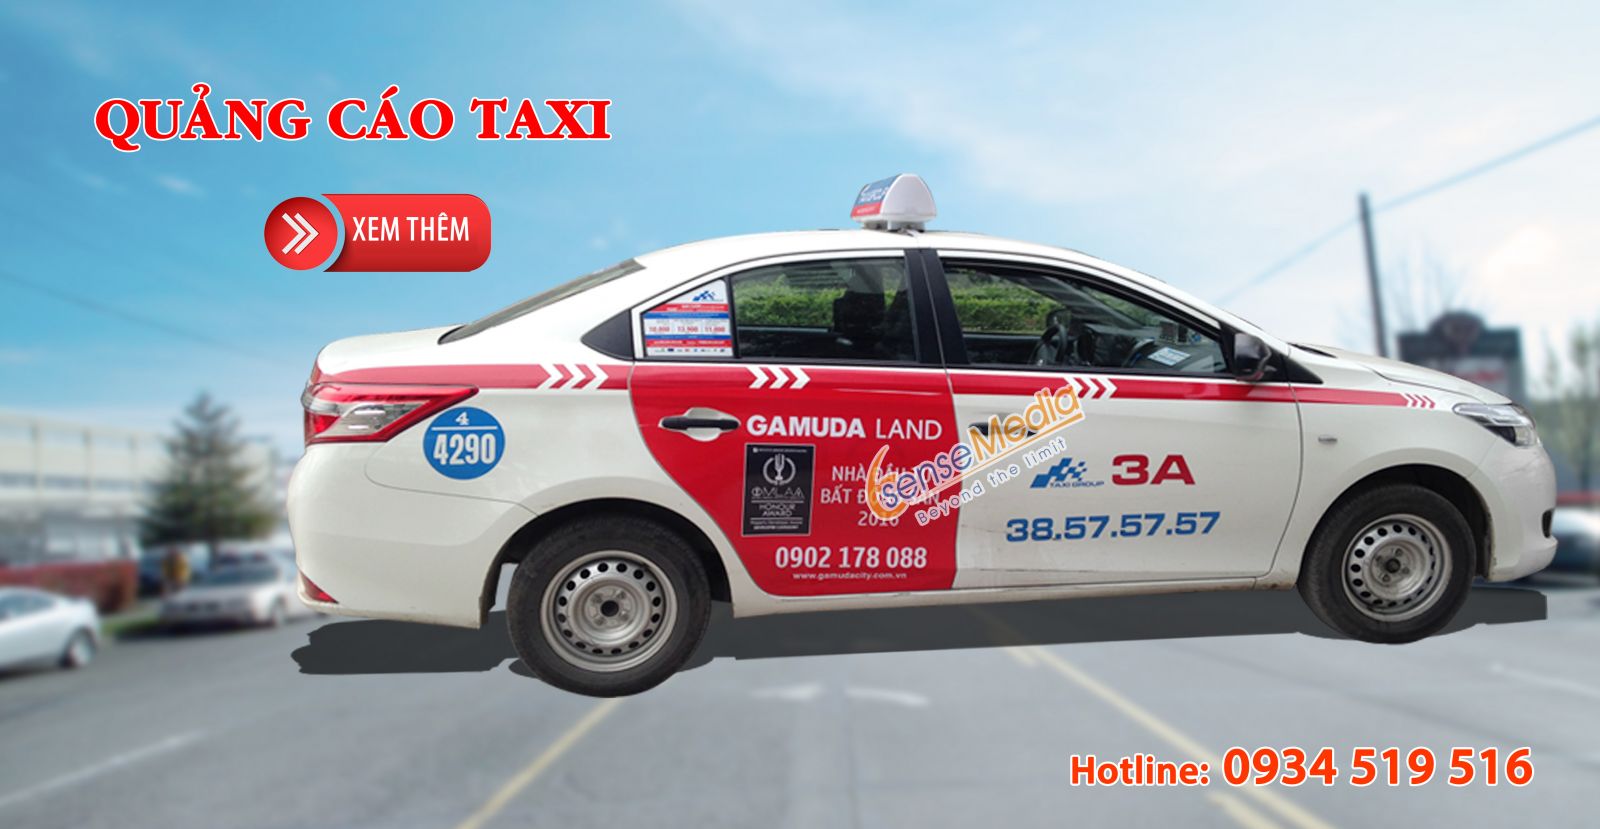 Quảng cáo taxi